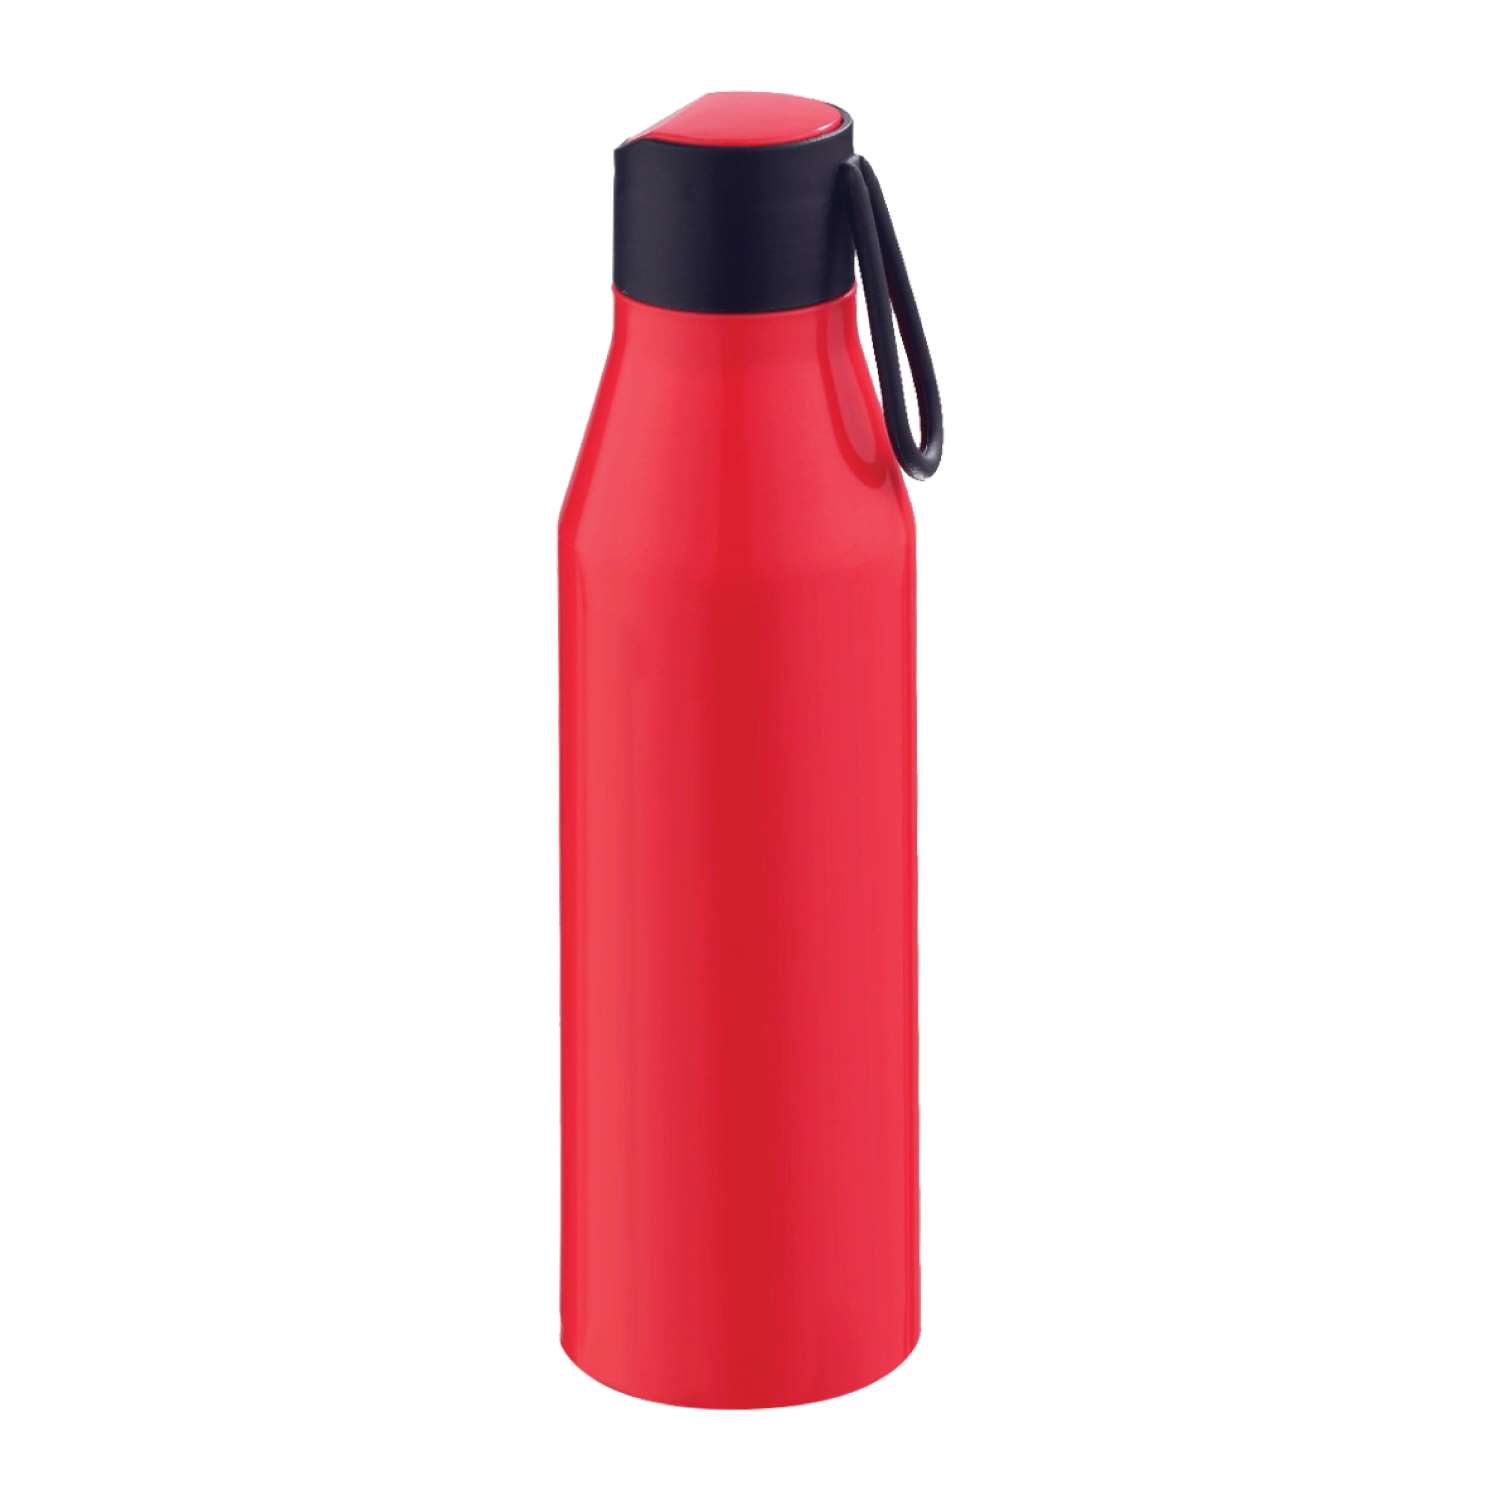 Selvel Bolt Plastic Water Bottle 700Ml